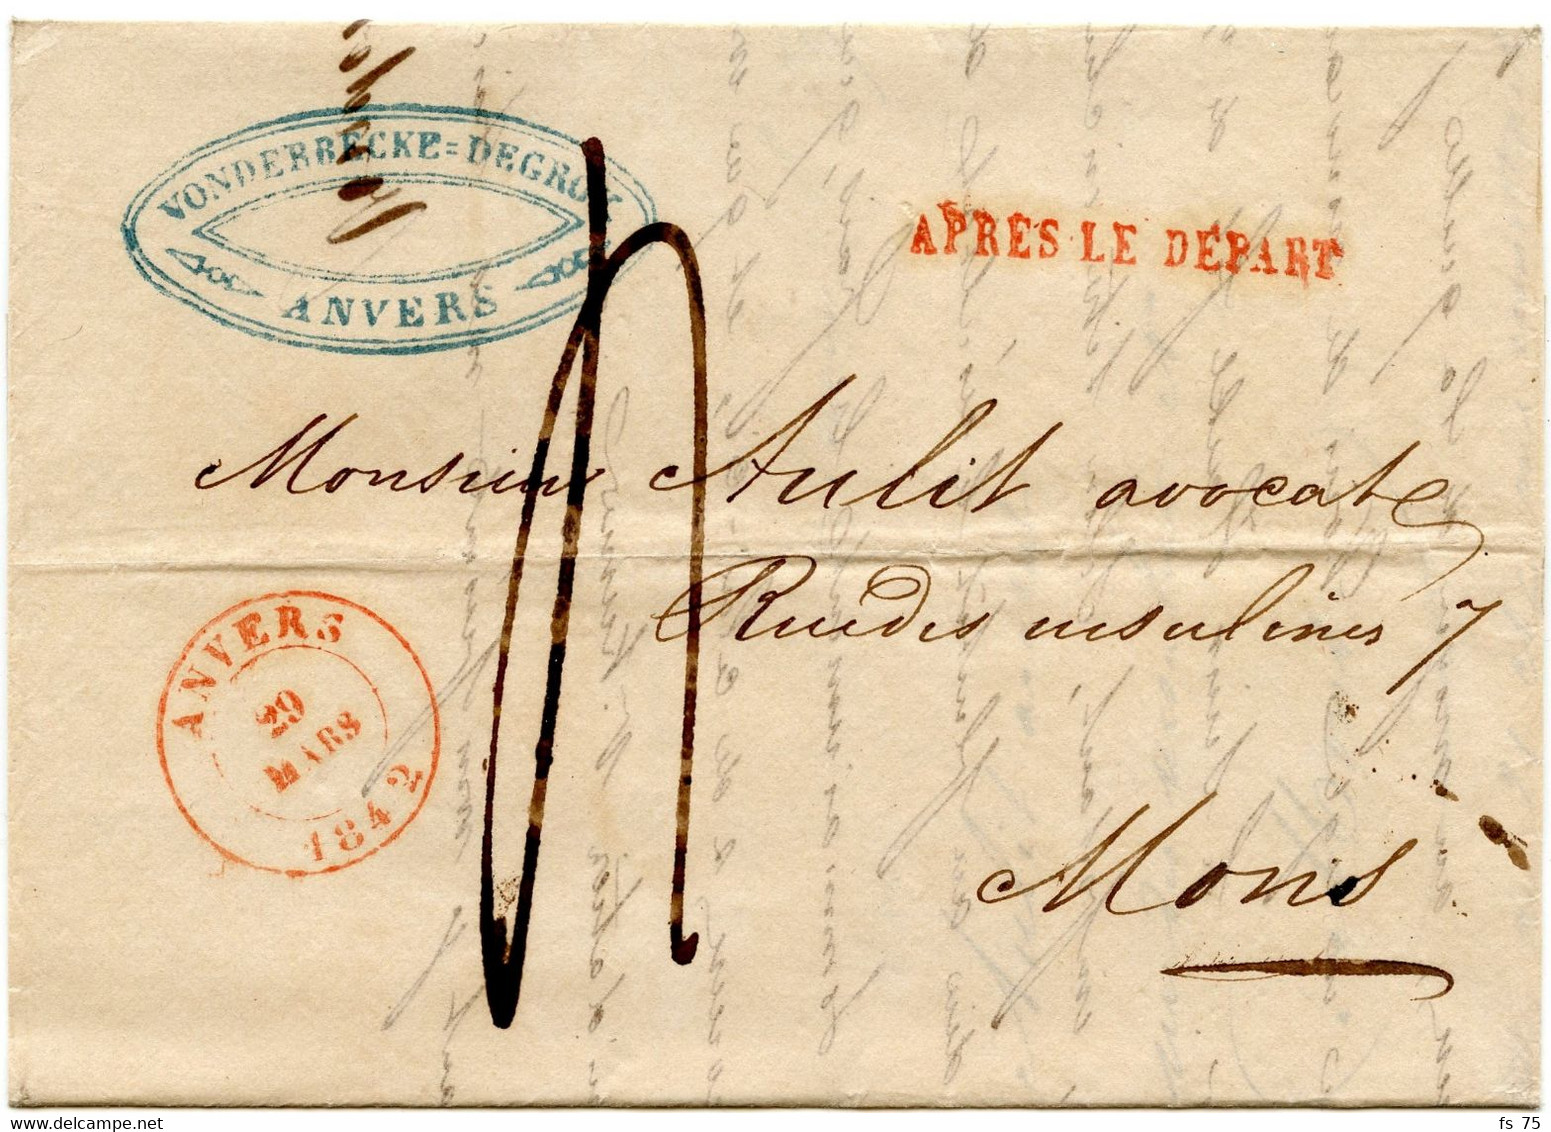 BELGIQUE - ANVERS + APRES LE DEPART SUR LETTRE AVEC CORRESPONDANCE, 1842 - 1830-1849 (Independent Belgium)